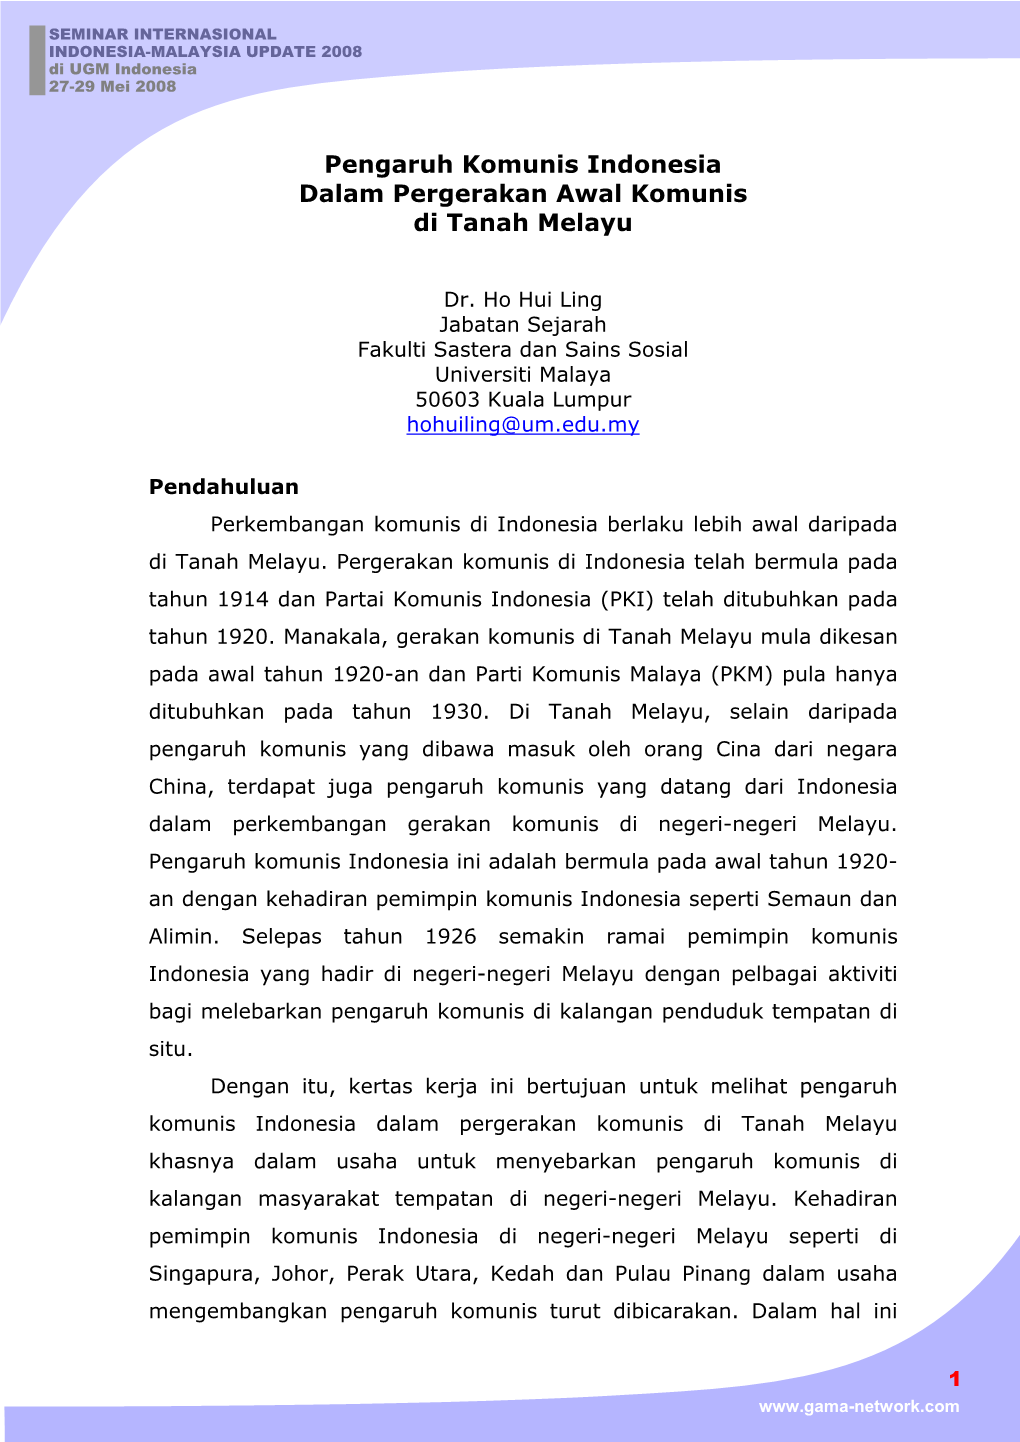 Pengaruh Komunis Indonesia Dalam Pergerakan Awal Komunis Di Tanah Melayu